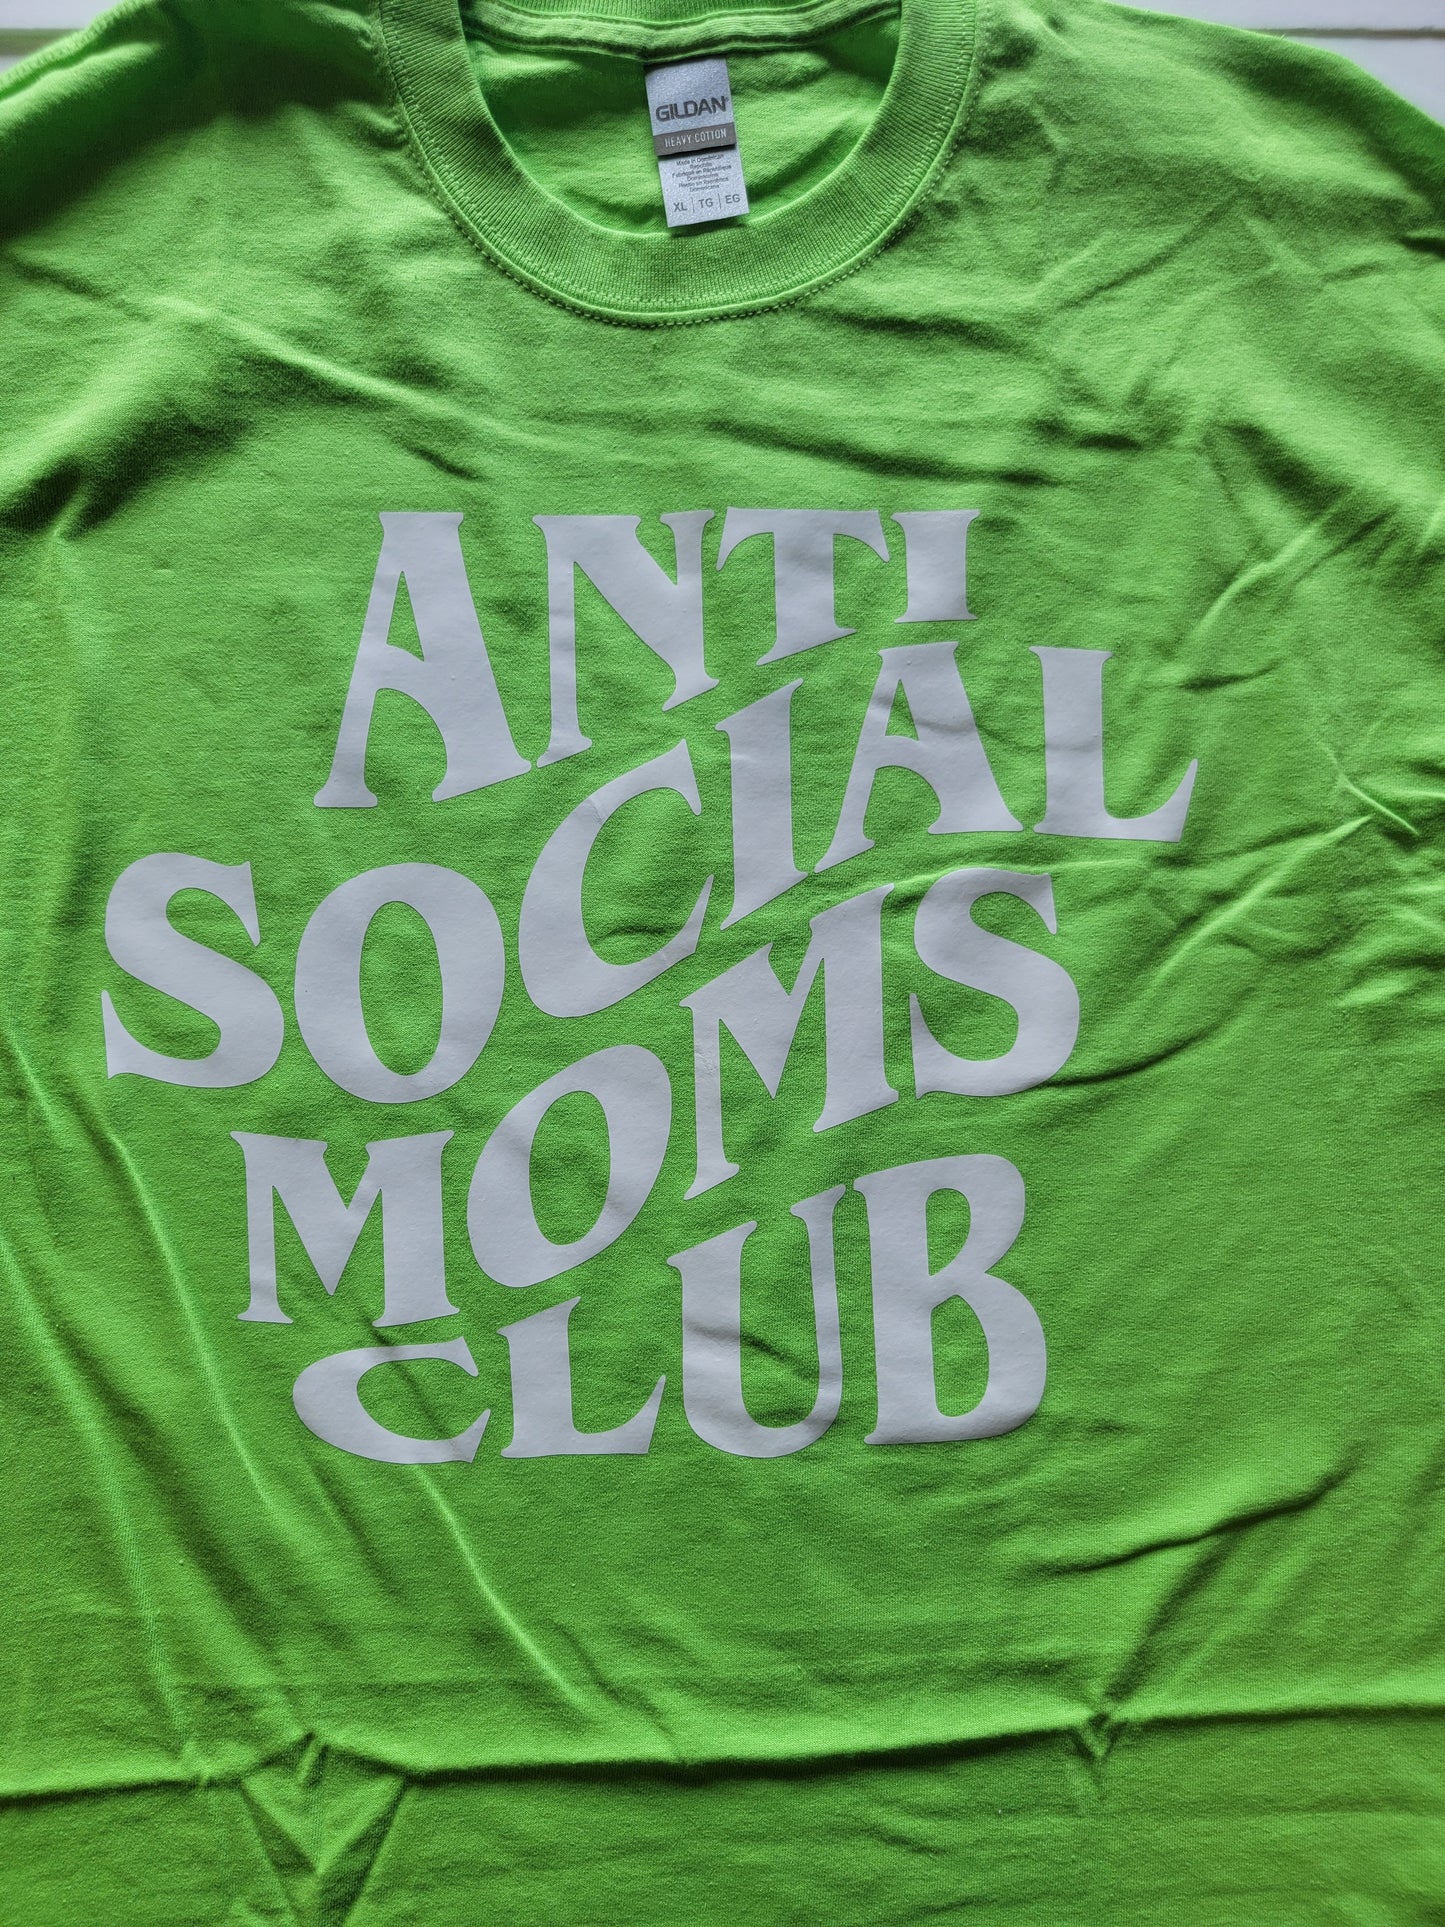 Anti Social Mom's club Custom T-shirt